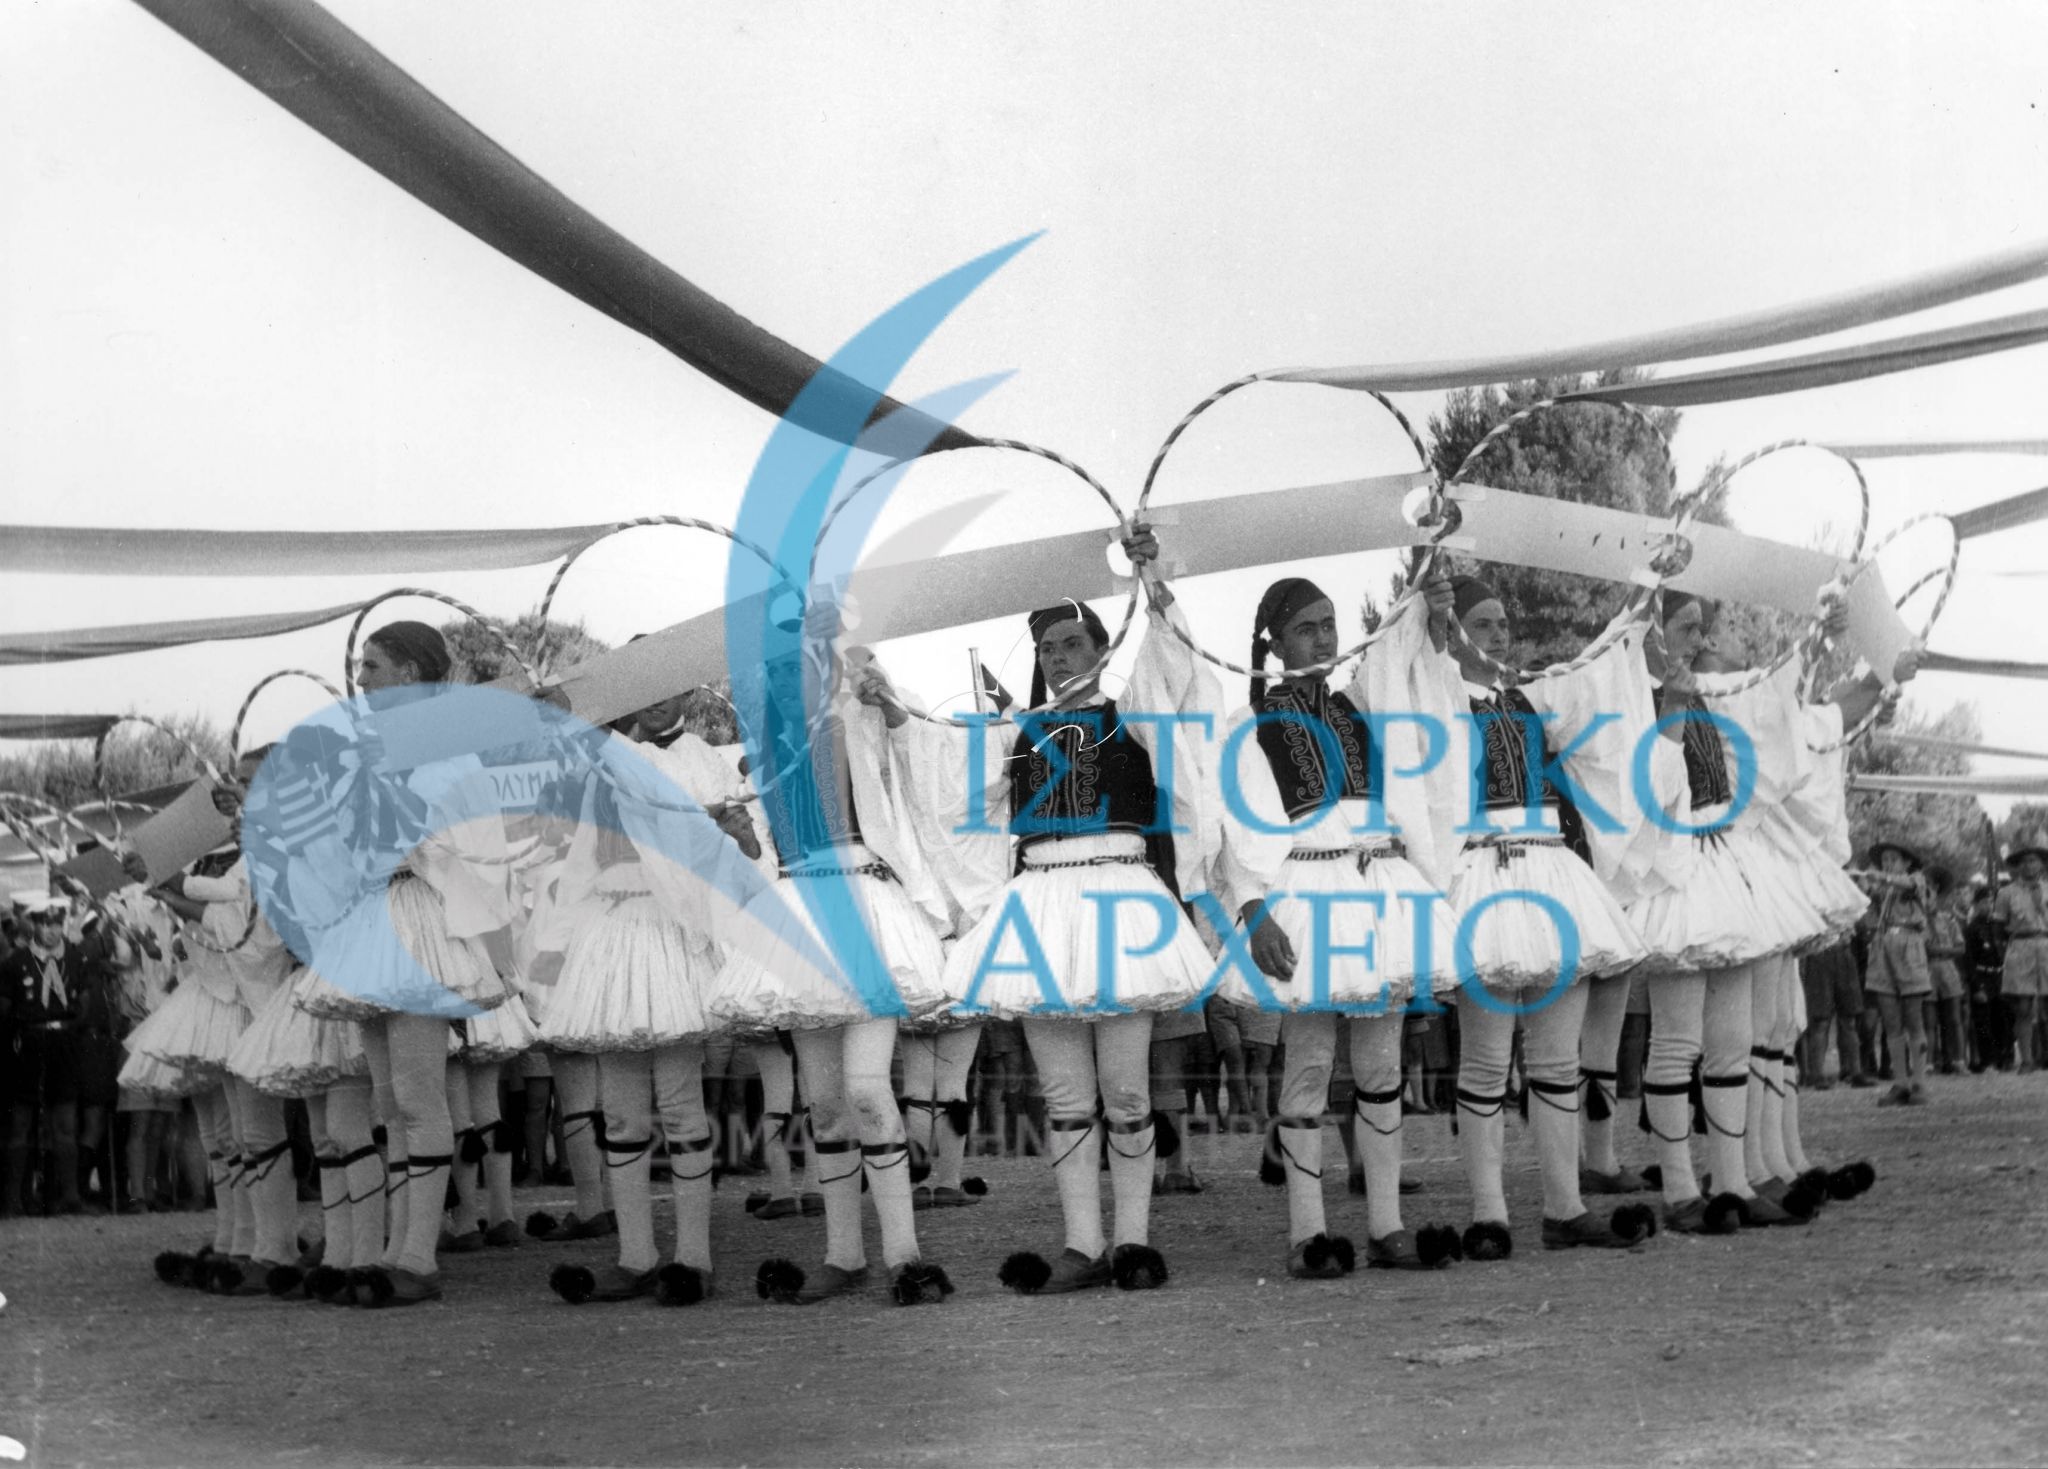 Έλληνες πρόσκοποι από όλο το κόσμο φορώντας εθνική ενδυμασία συνδέουν τους κύκλους των πόλεων όπου βρίσκονται ελληνικά προσκοπικά συστήματα κατά την Πυρά Έναρξης του Πανελληνίου Τζάμπορη Αποδήμων τον Αύγουστο του 1956.